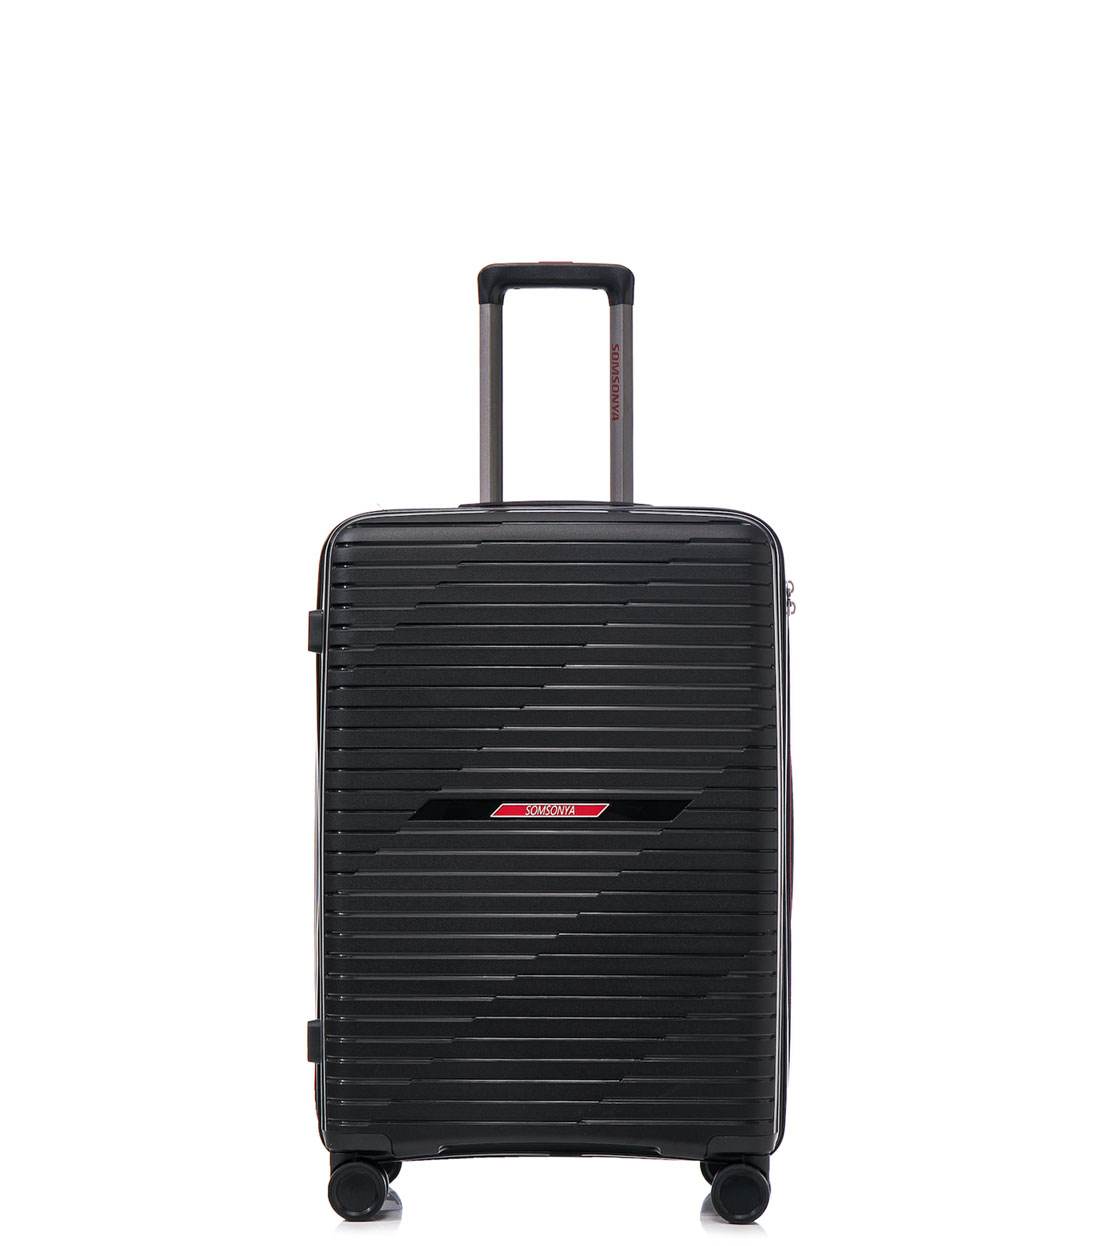 Малый чемодан Somsonya PP Singapore S (56 см) Black